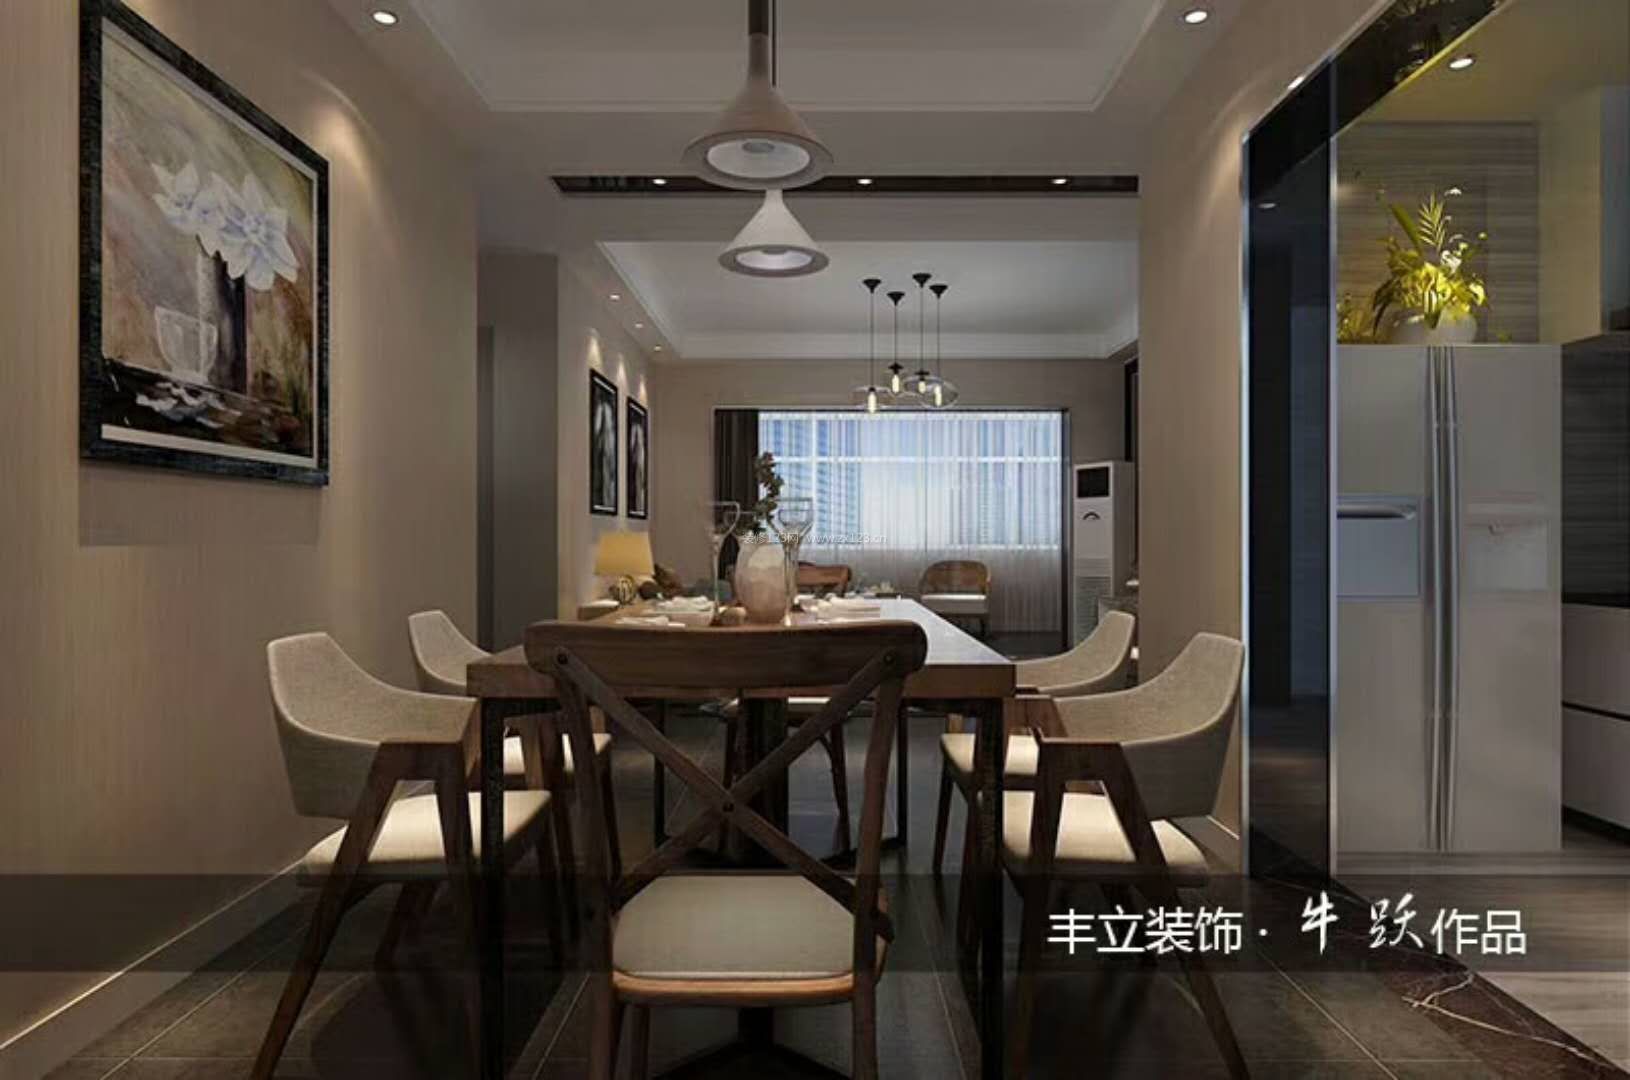 新中式餐厅装修效果图欣赏 2020餐厅红酒杯图片欣赏